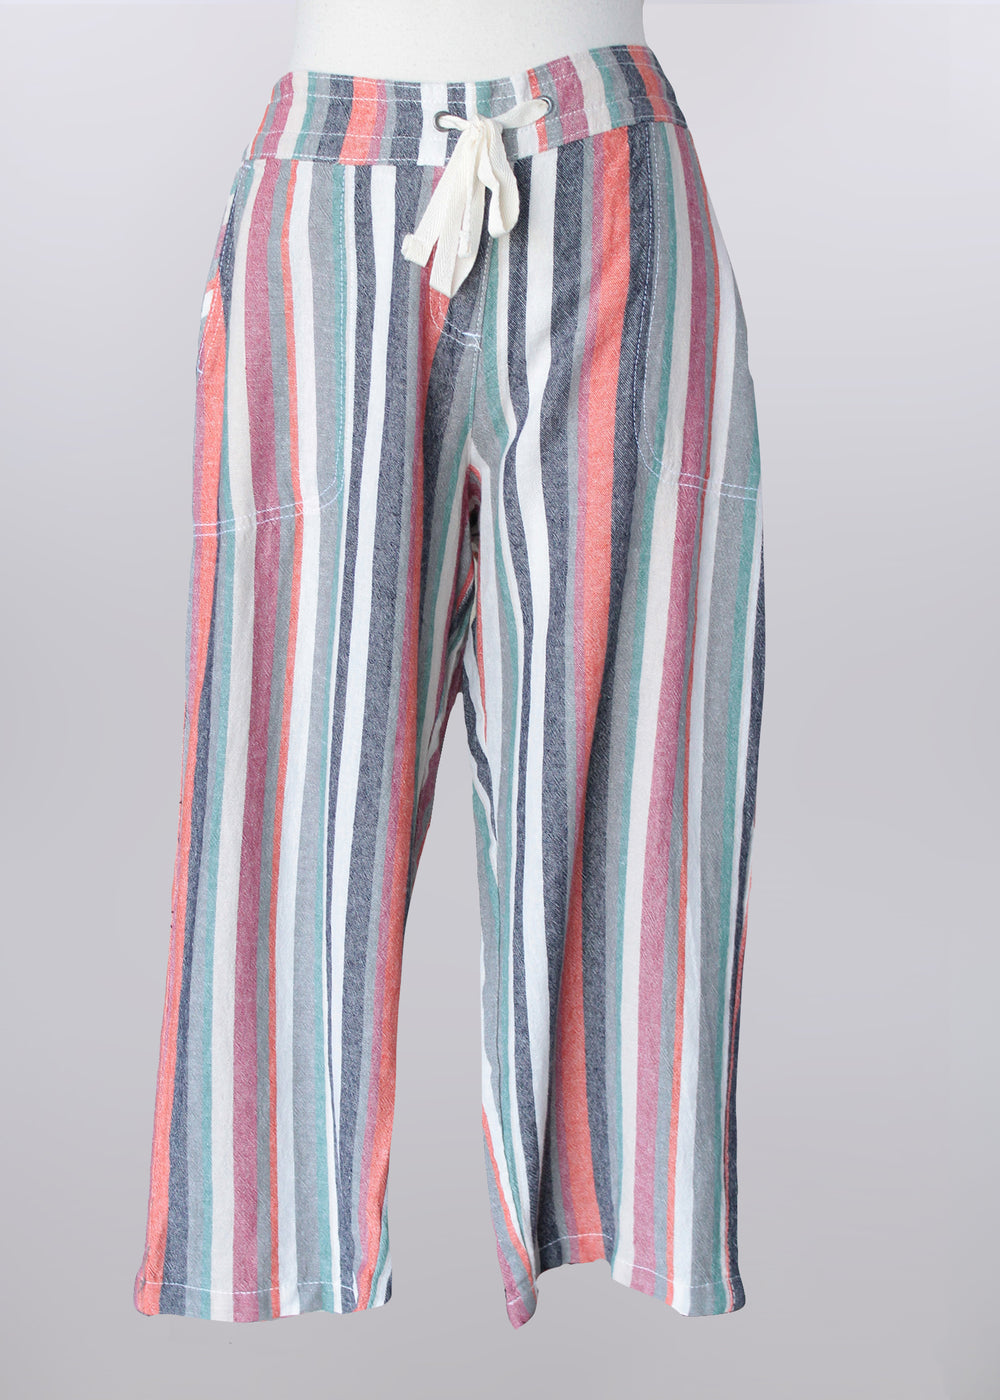 Keren Hart pants 86016, linen-blend stripe